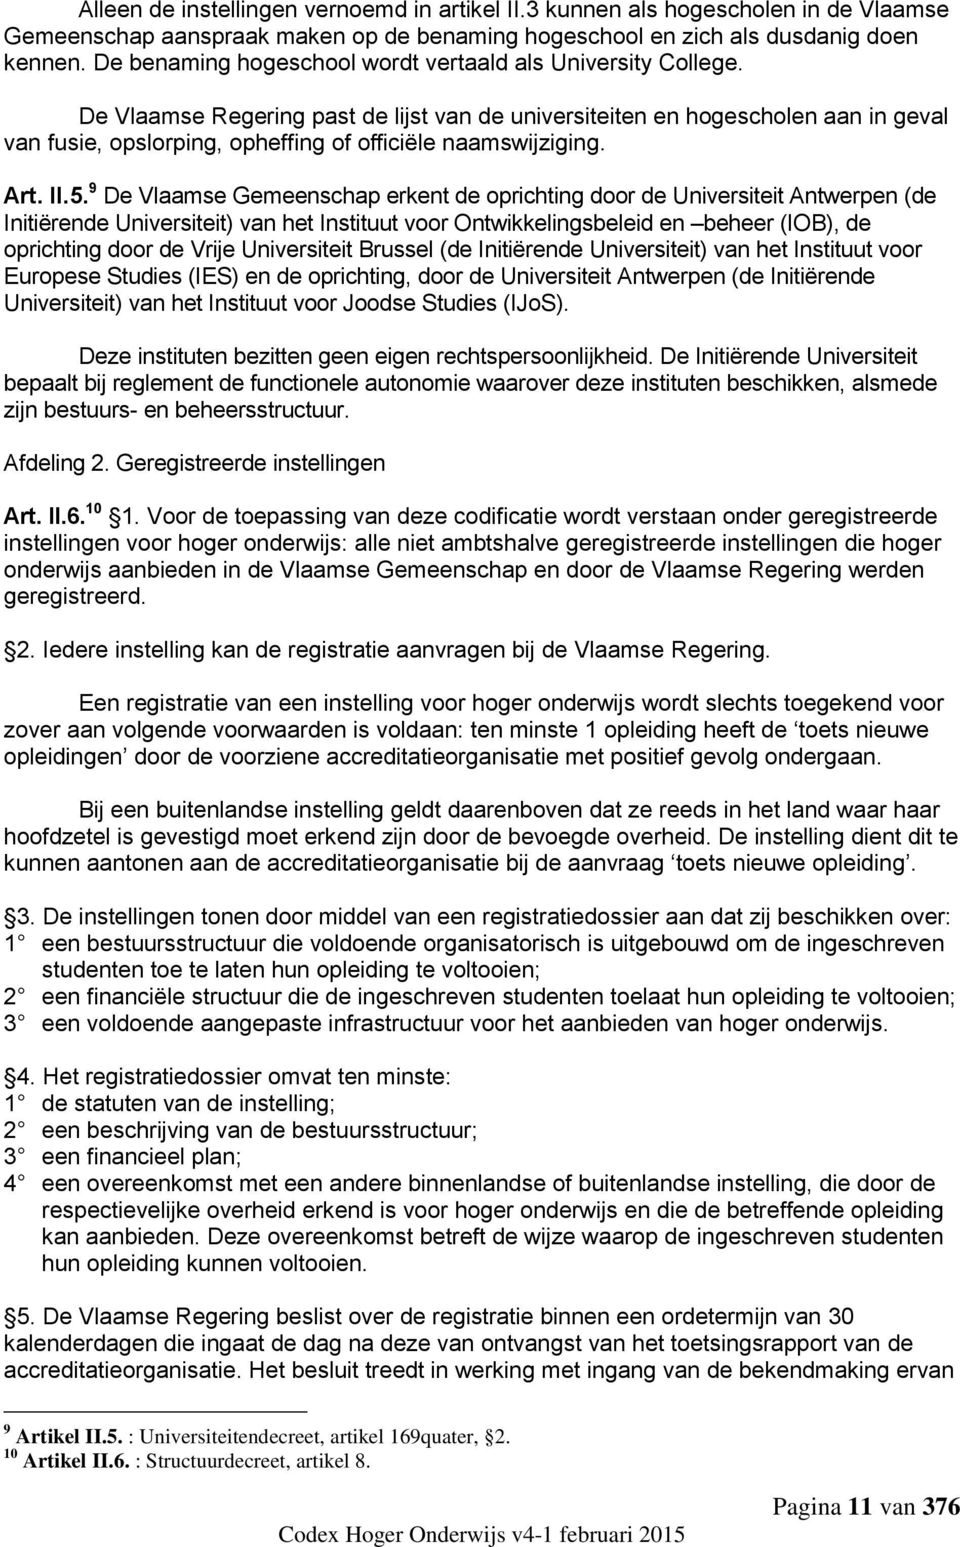 De Vlaamse Regering past de lijst van de universiteiten en hogescholen aan in geval van fusie, opslorping, opheffing of officiële naamswijziging. Art. II.5.